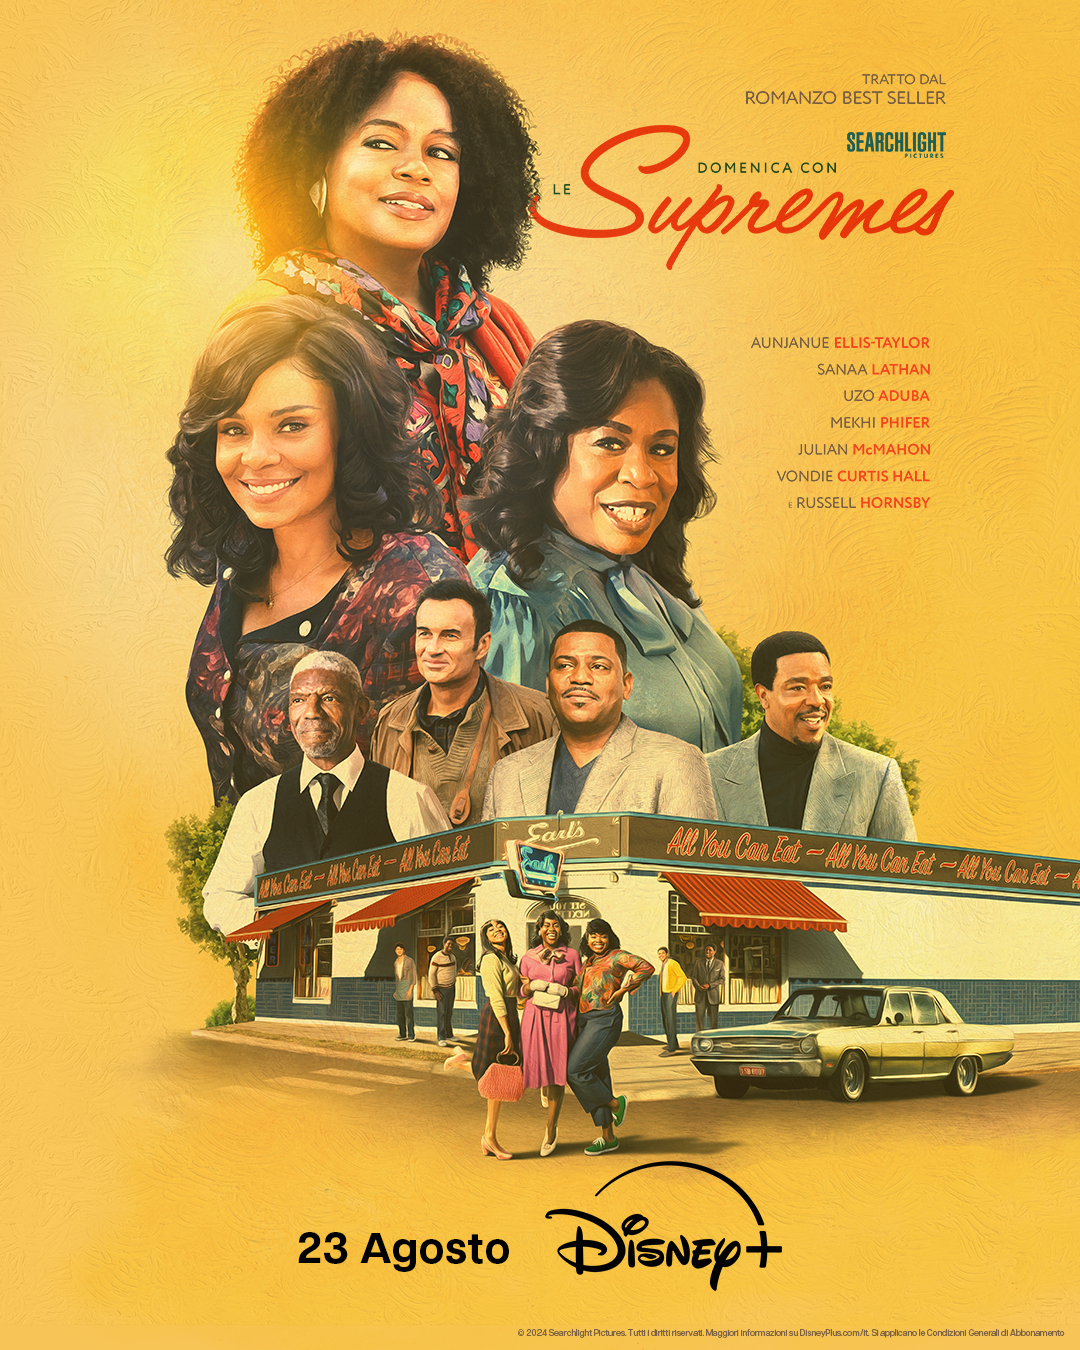 Disney+: Domenica con le Supremes, dal 23 agosto il film originale in streaming